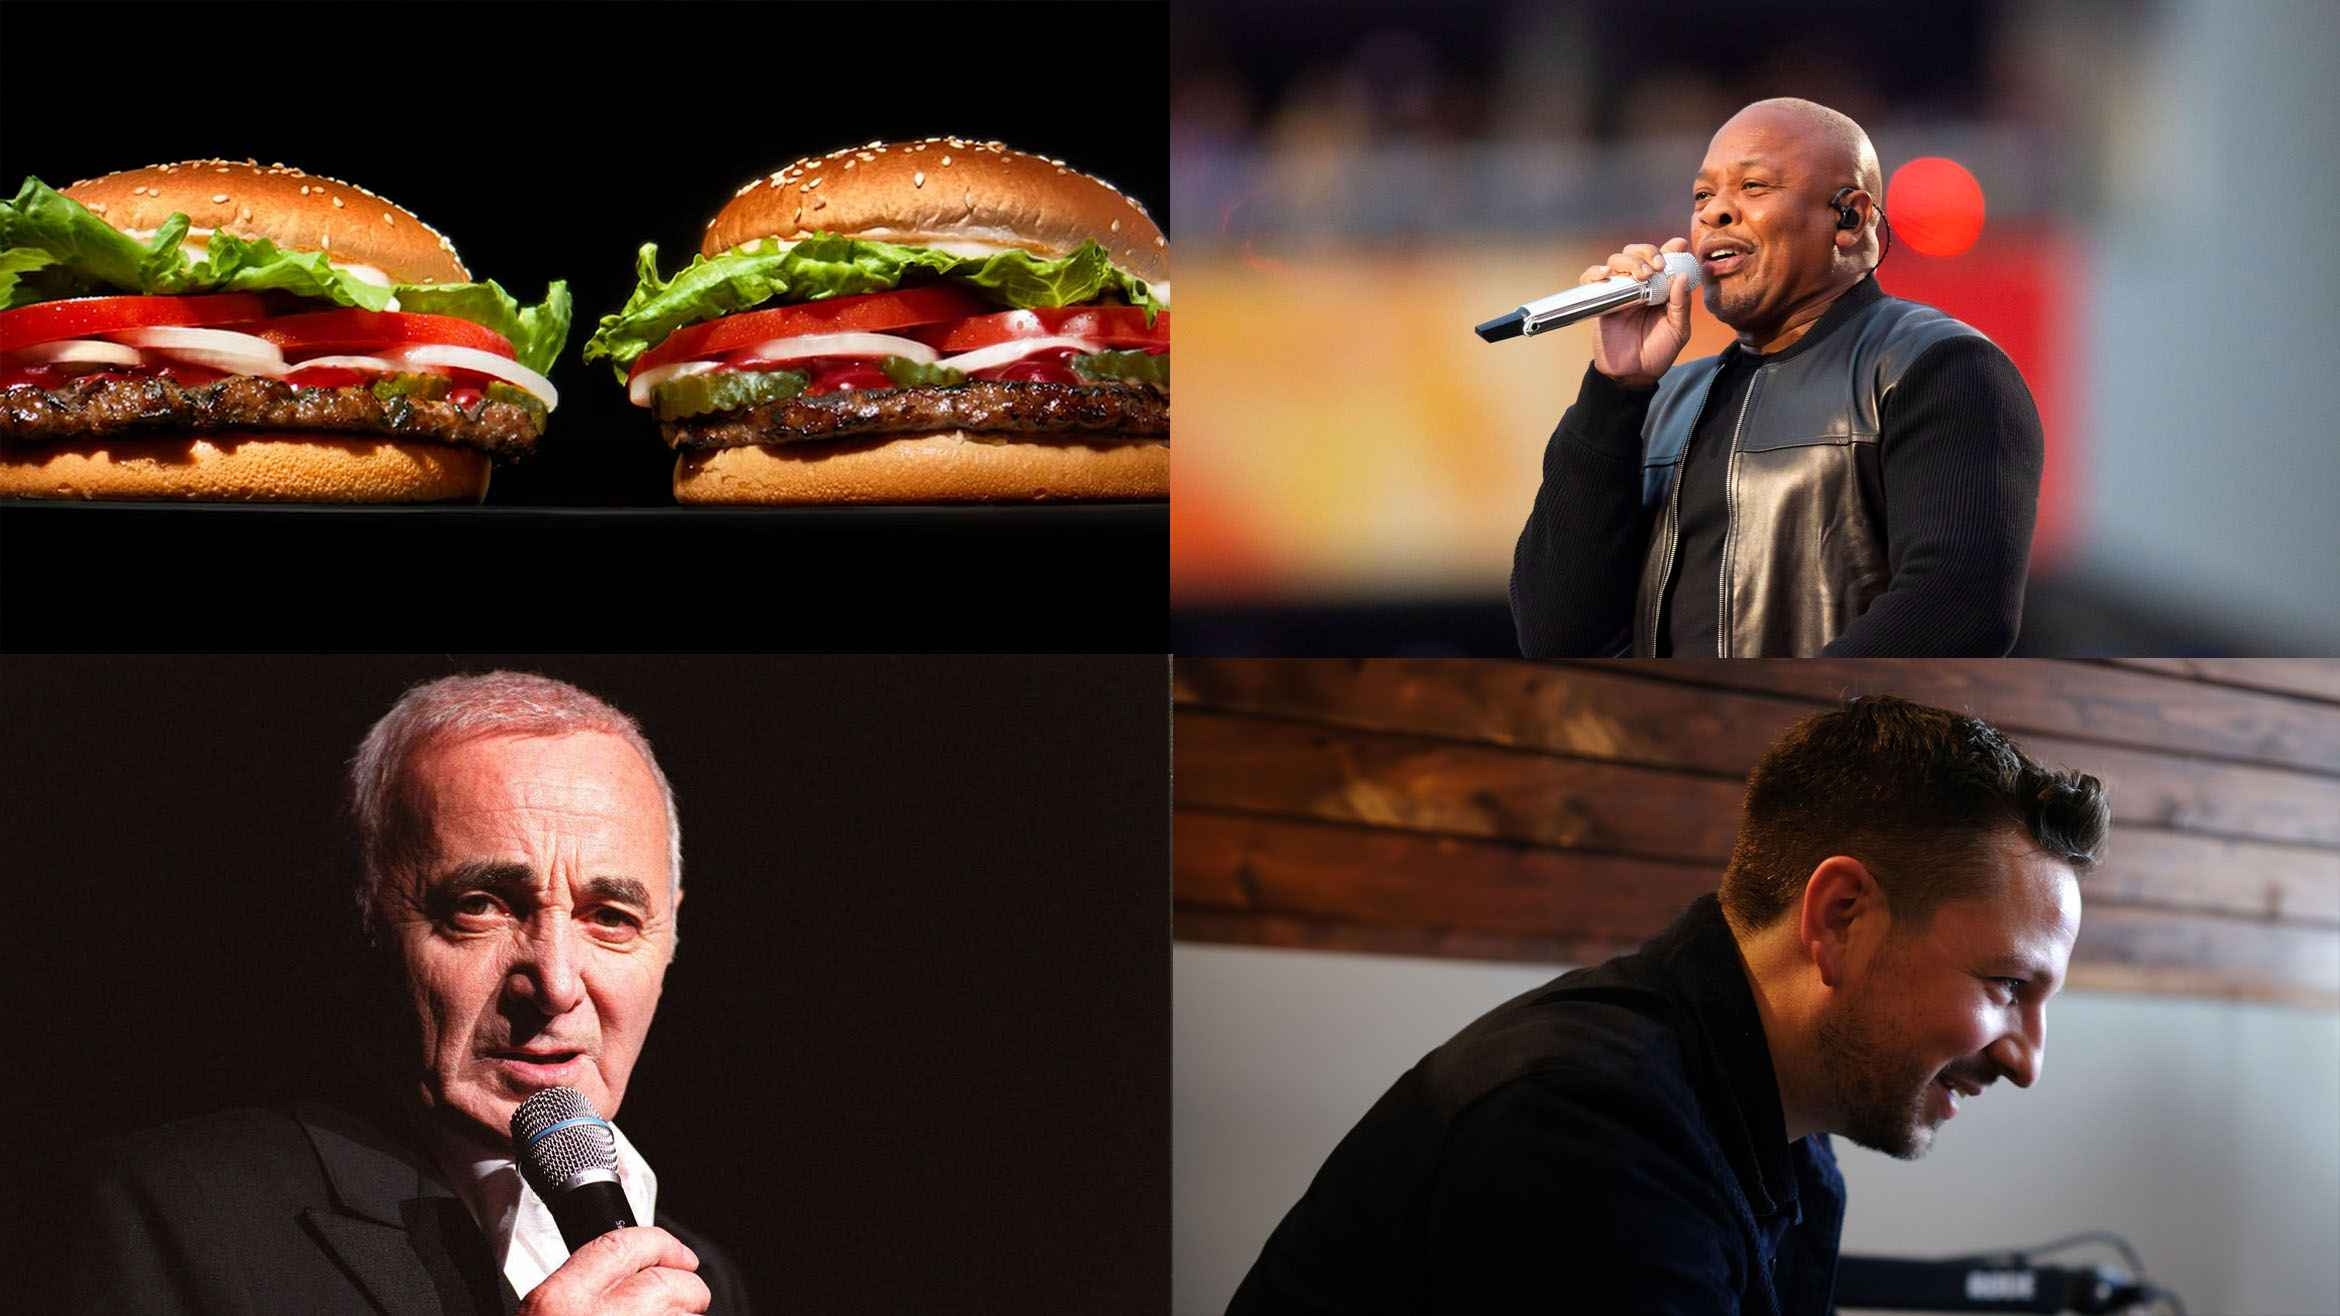 Burger King: Musik von Dr. Dre, geht das?